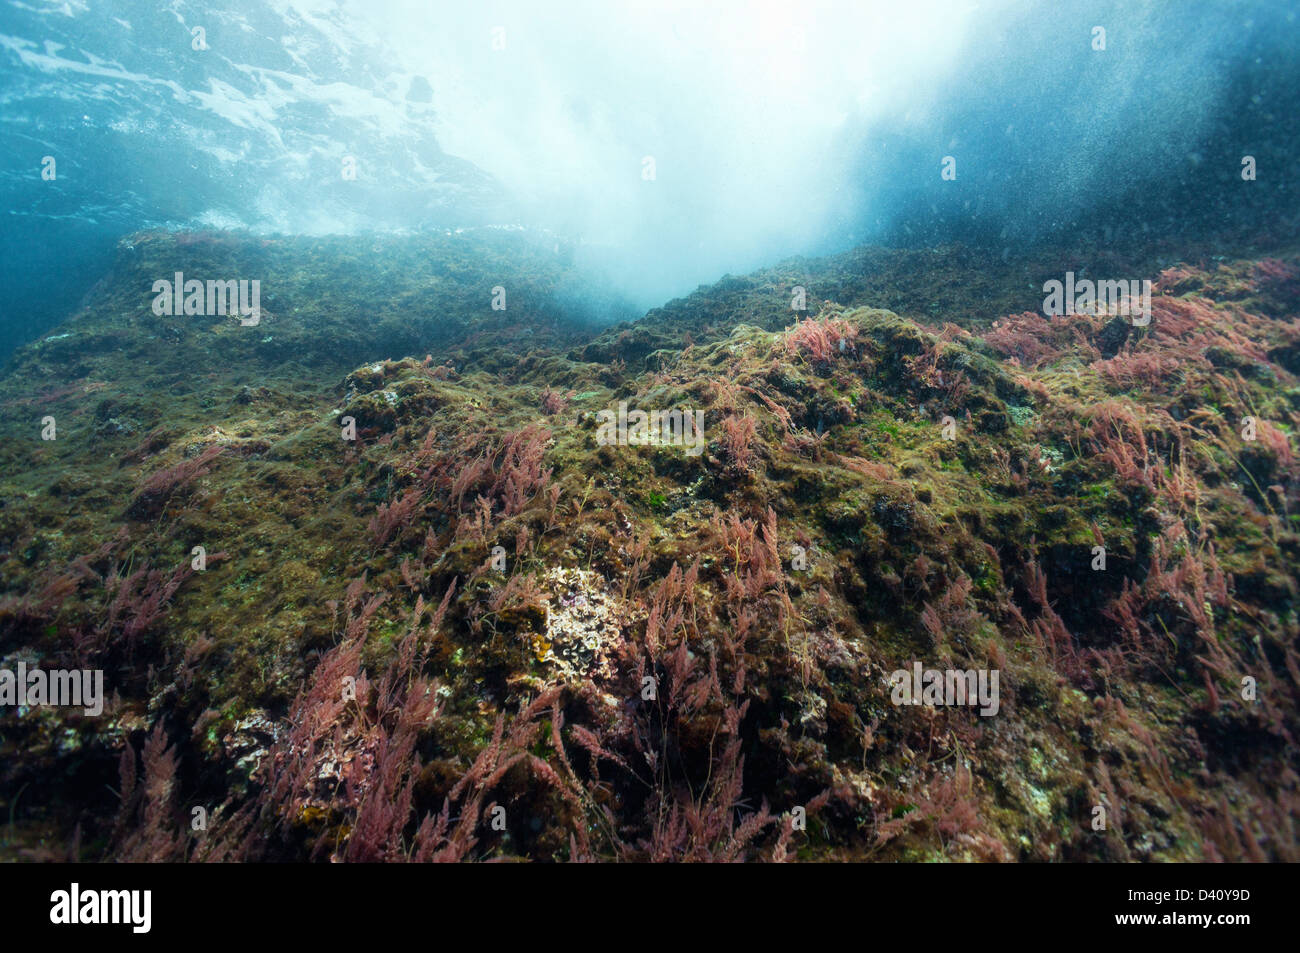 Le alghe sulle rocce vicino alla superficie del mare, vista subacquea, Europa Foto Stock